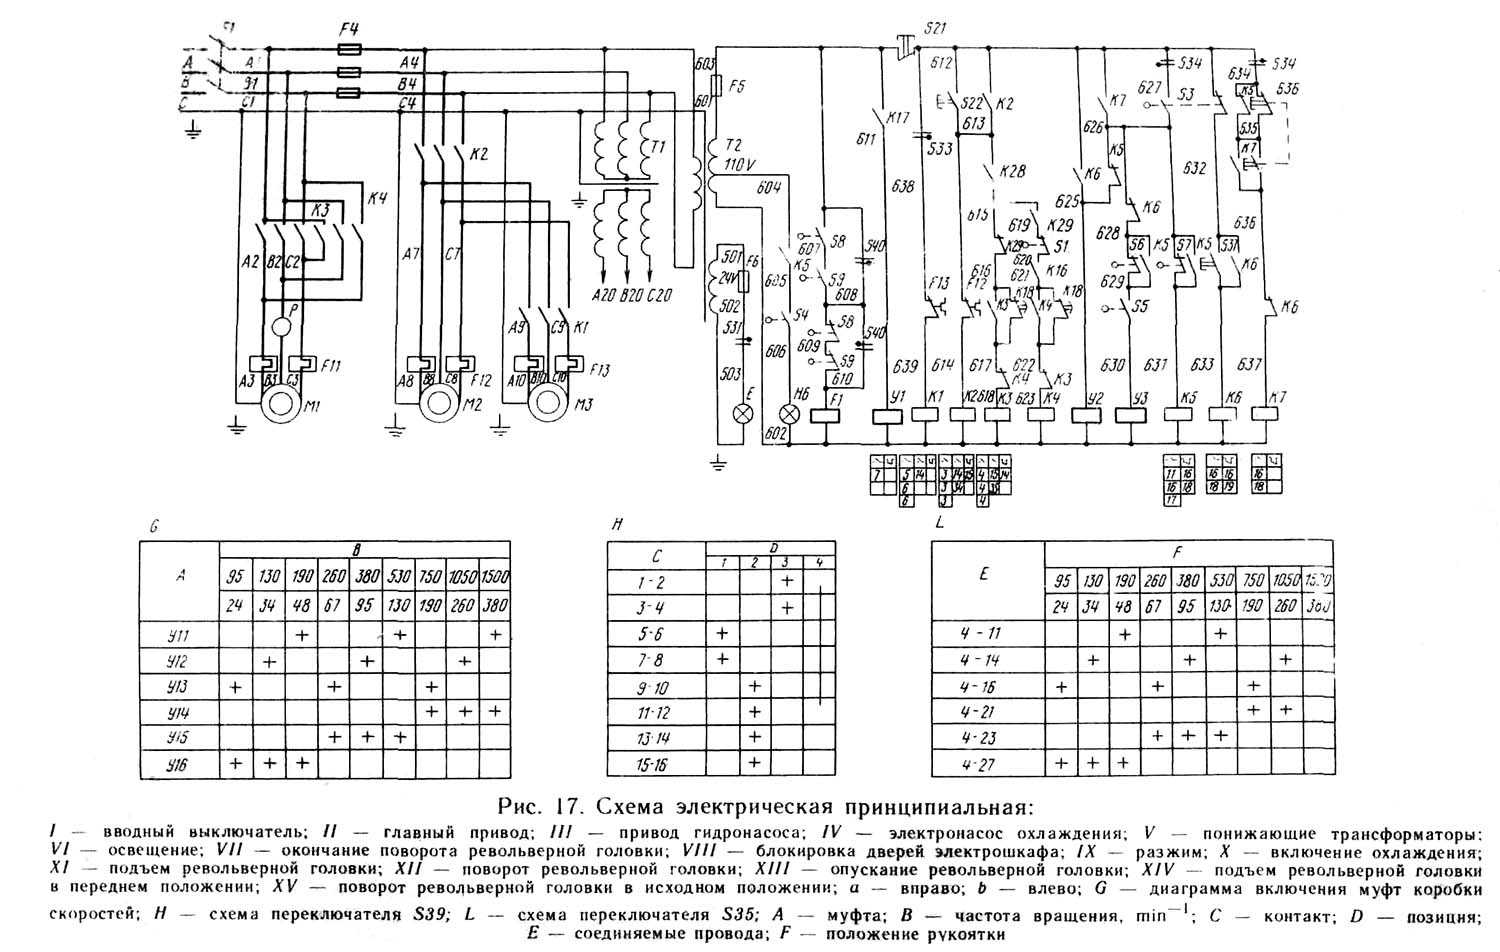 Технические характеристики токарного станка фт-11, подробные схемы